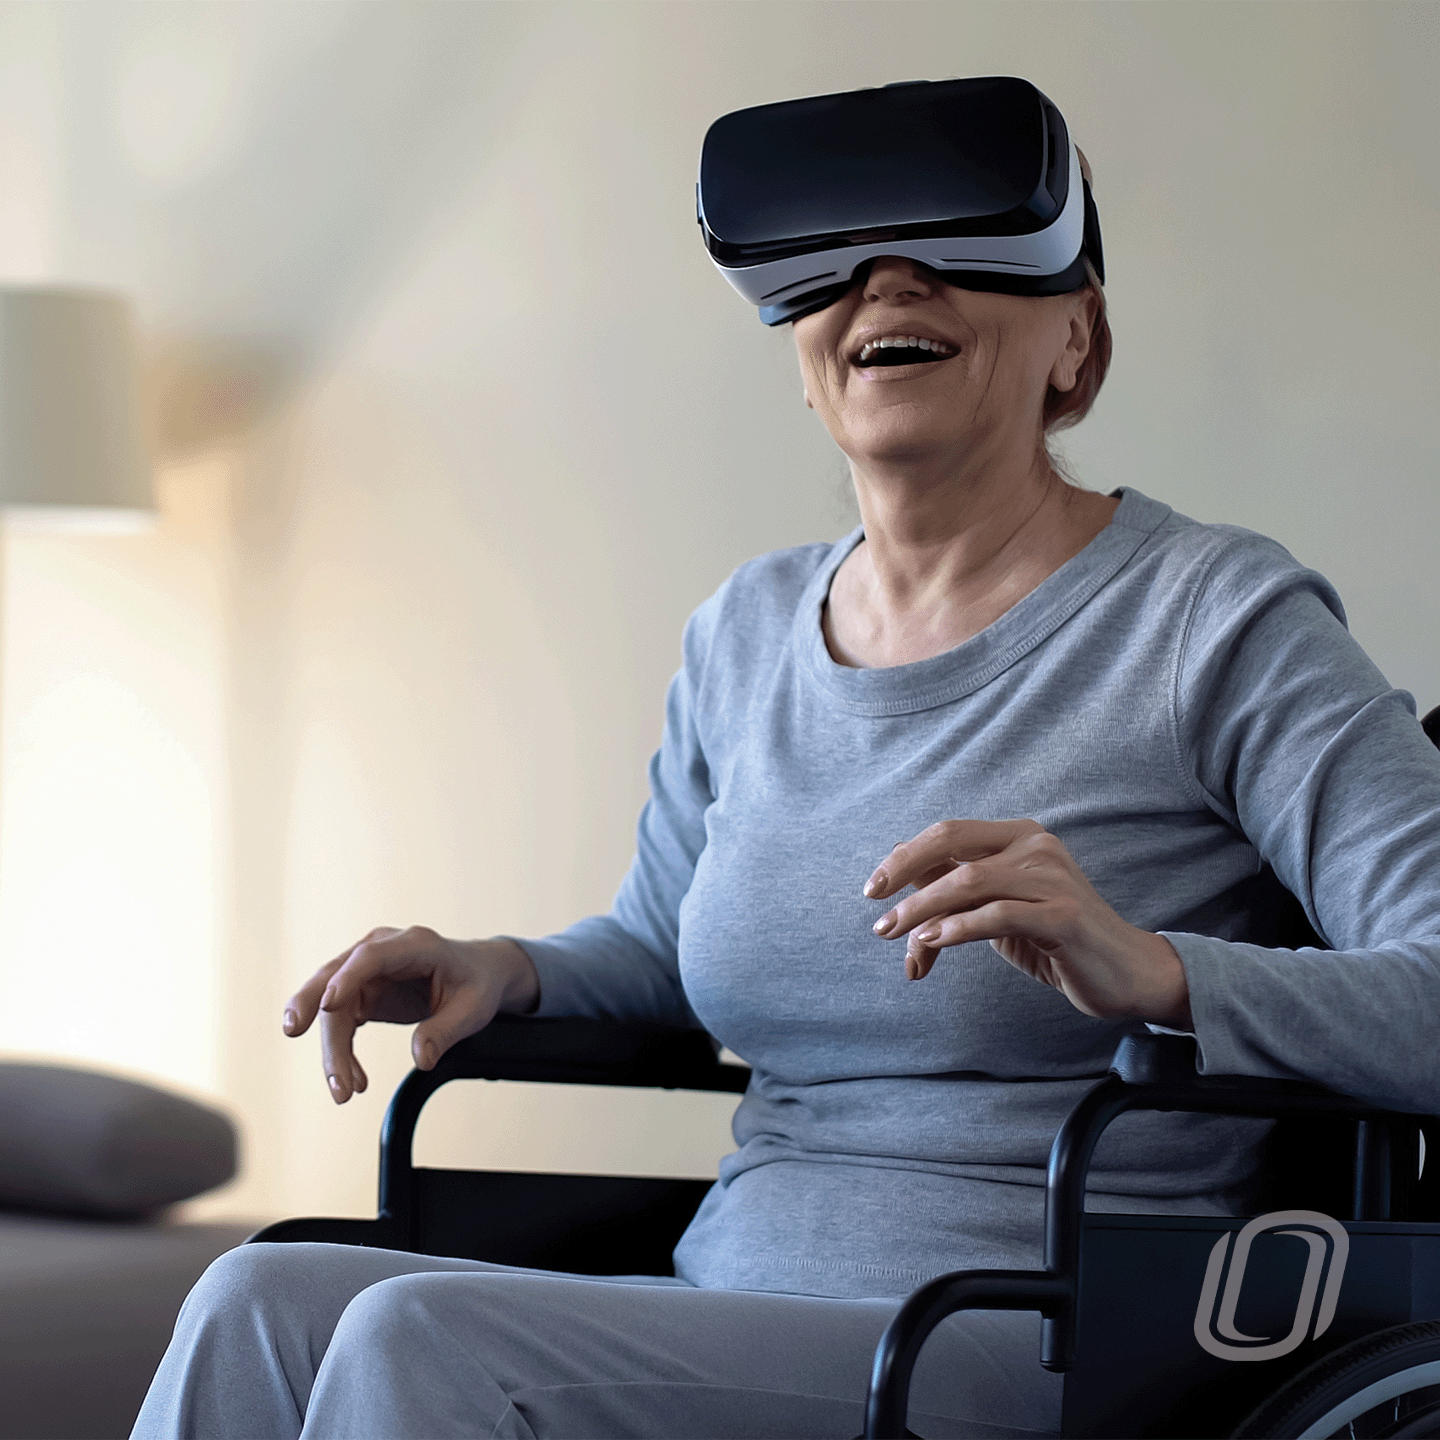 elderly lady in a wheel chair wearing a vr headset